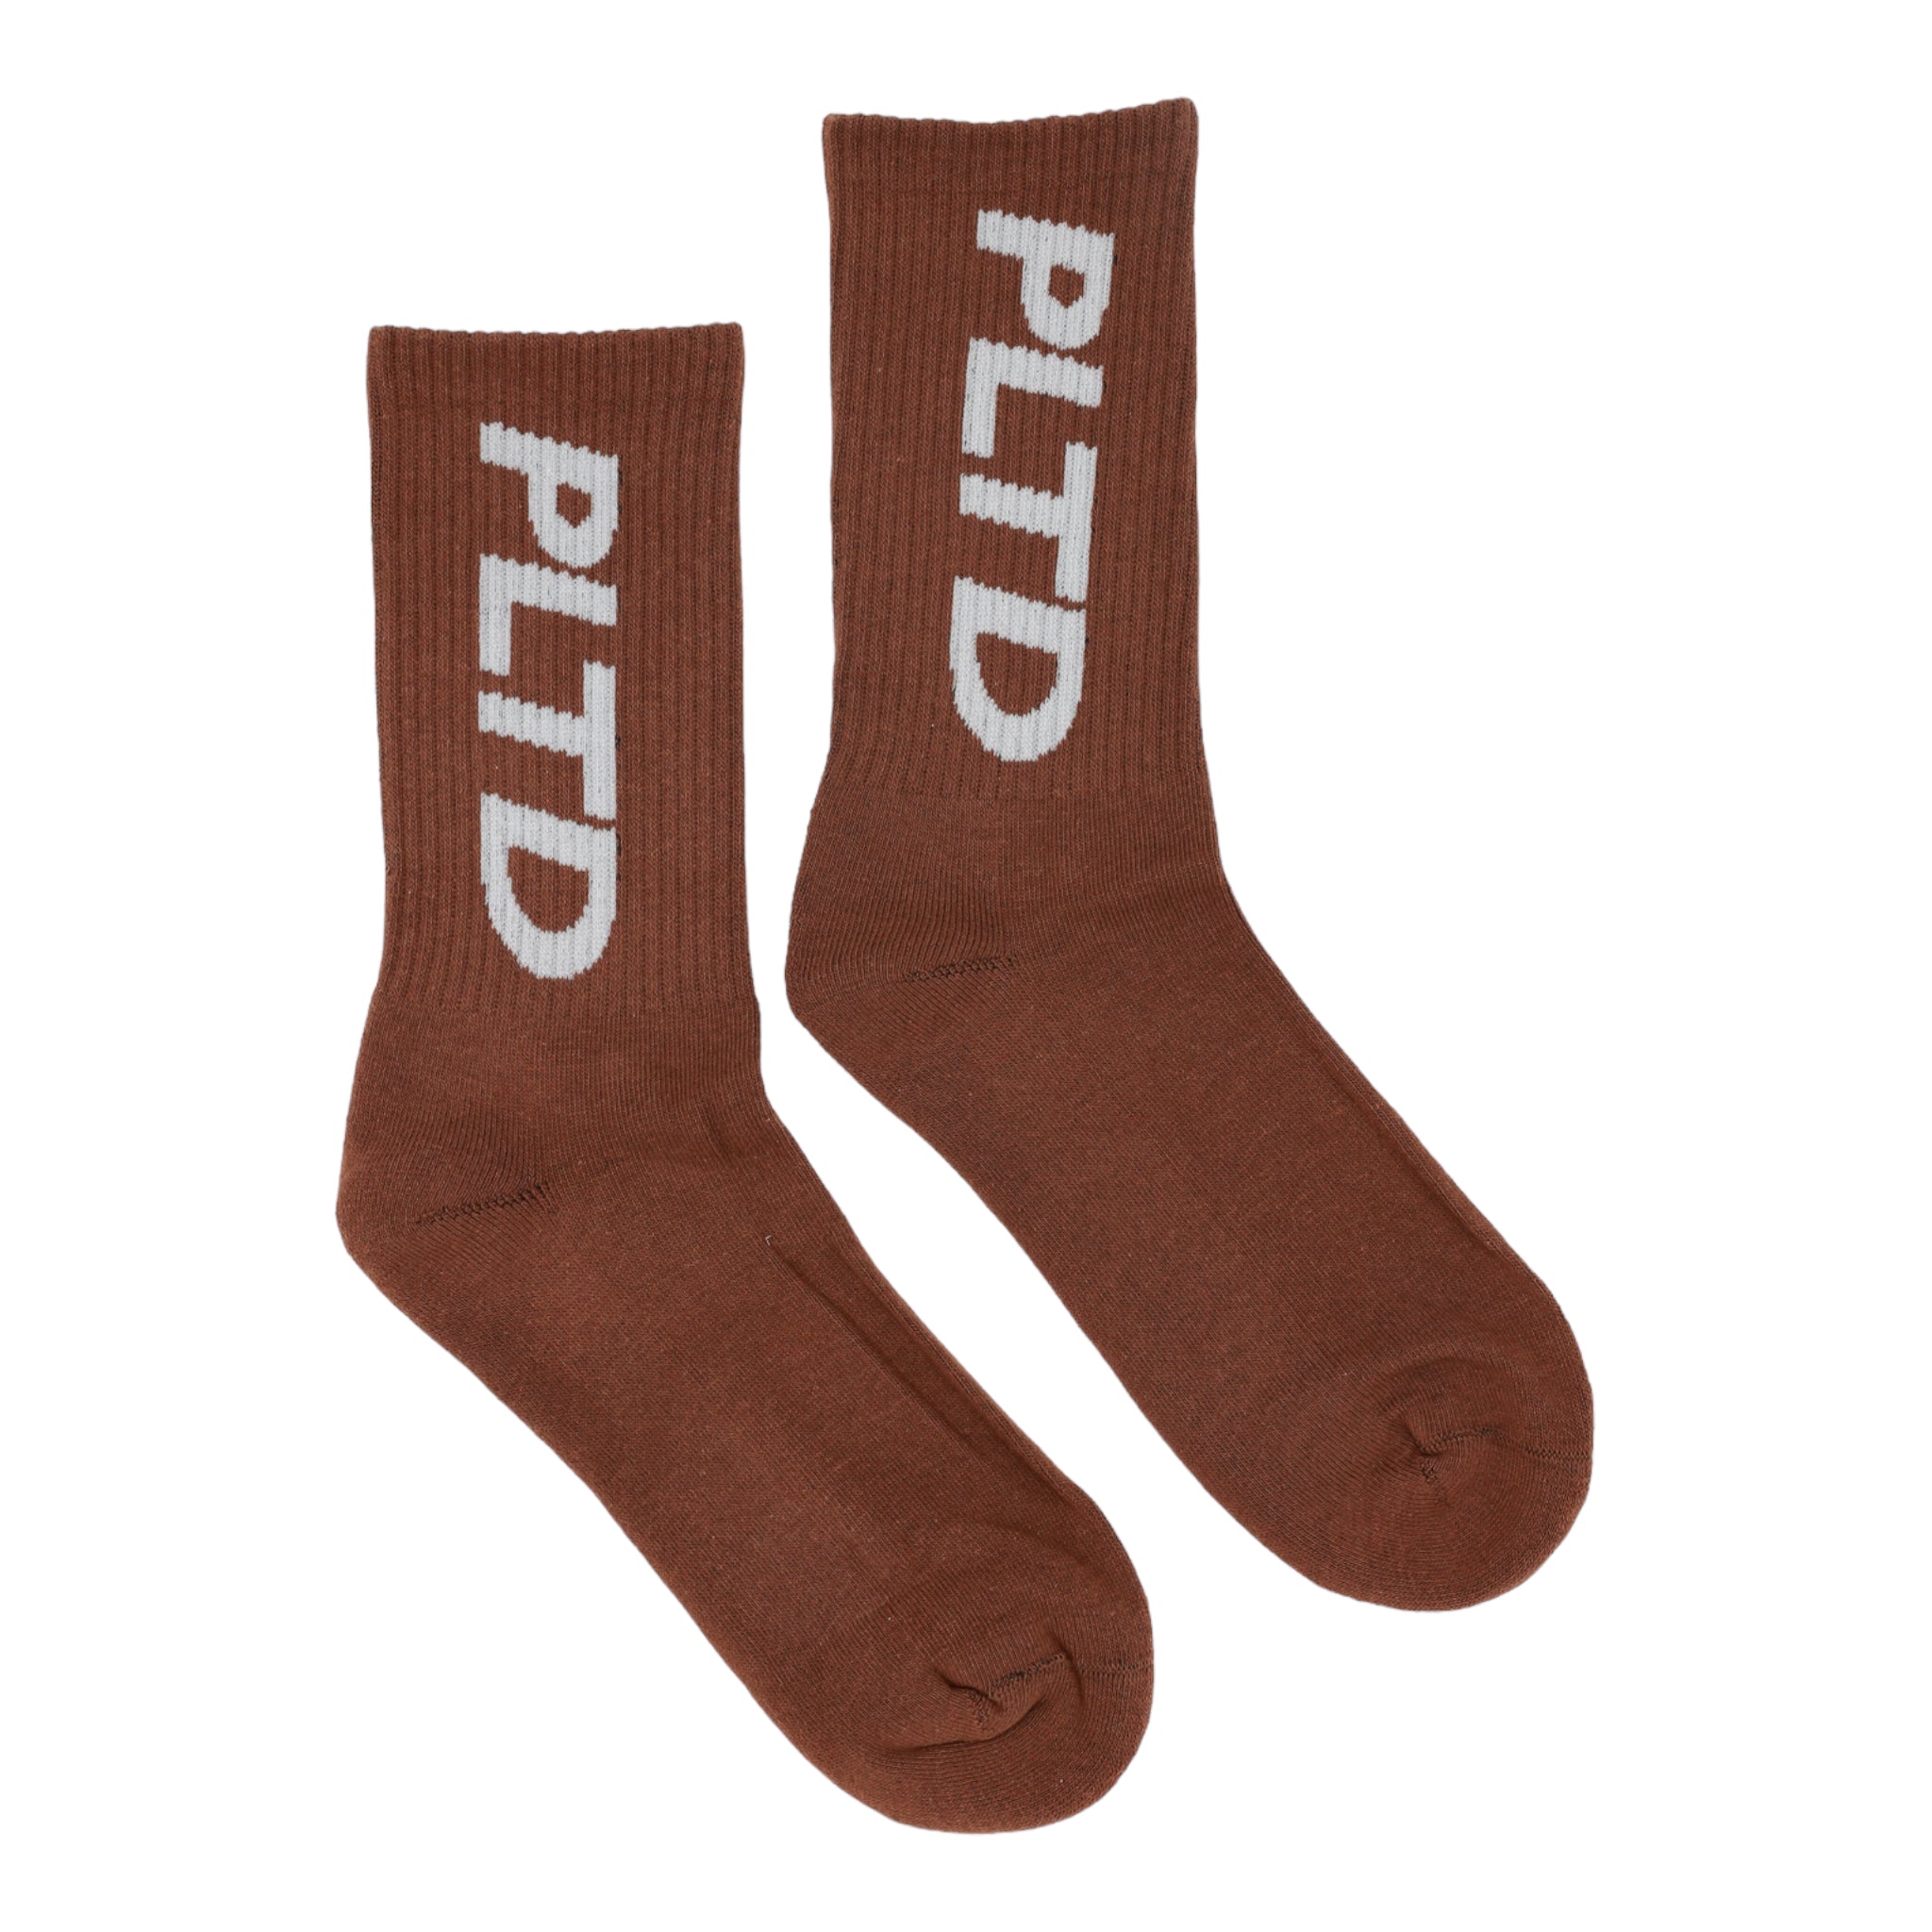 Team PLTD - 6 Pack Sock Bundle